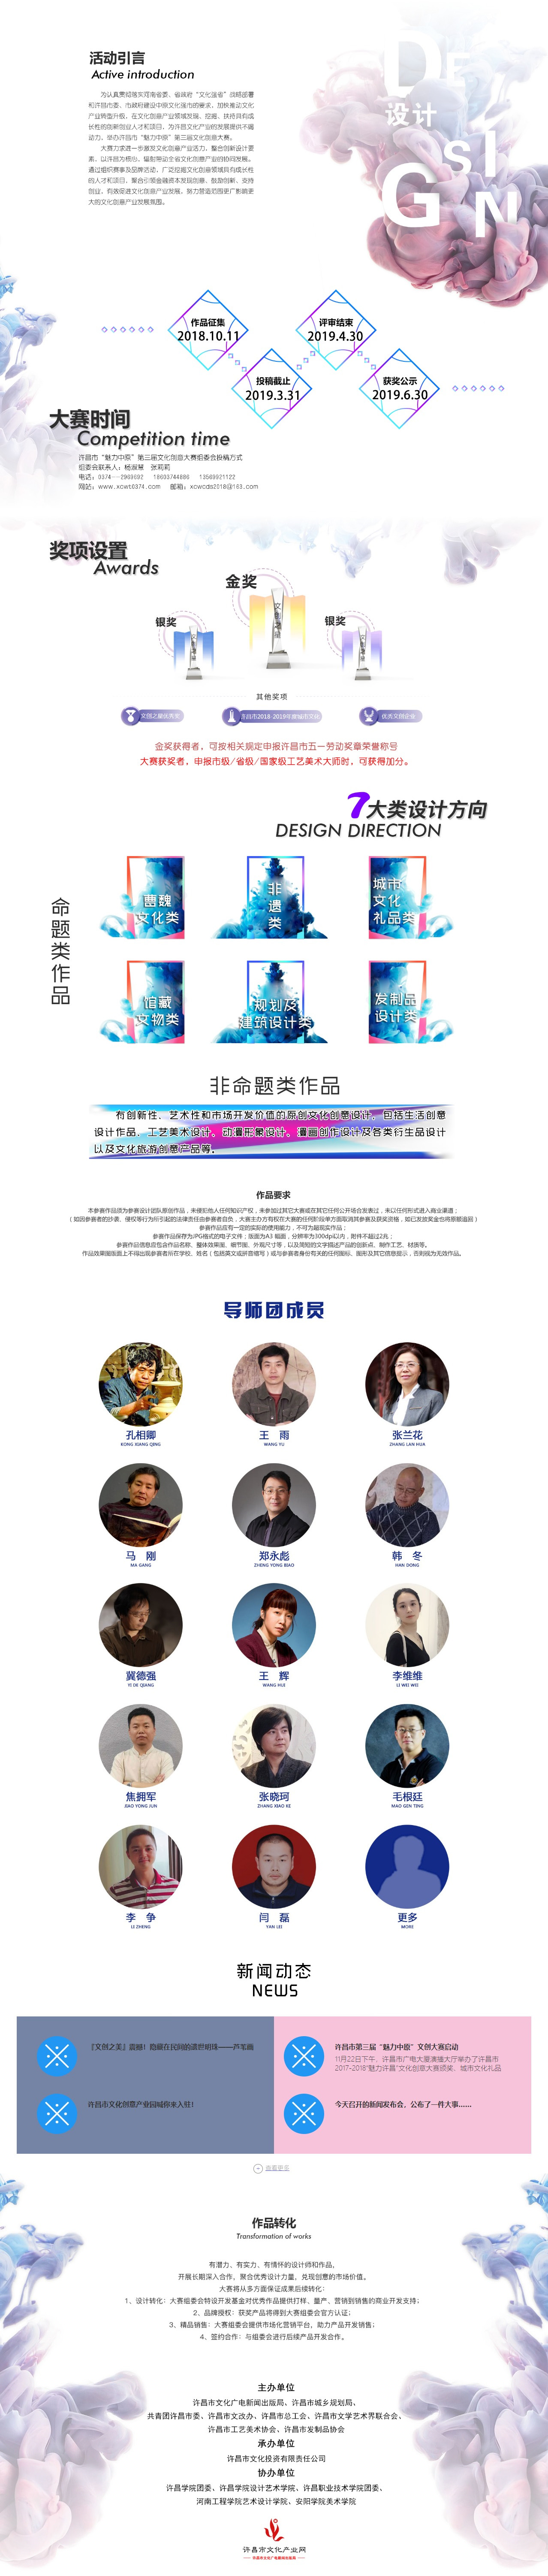 許昌市「魅力中原」第三屆文化創意大賽